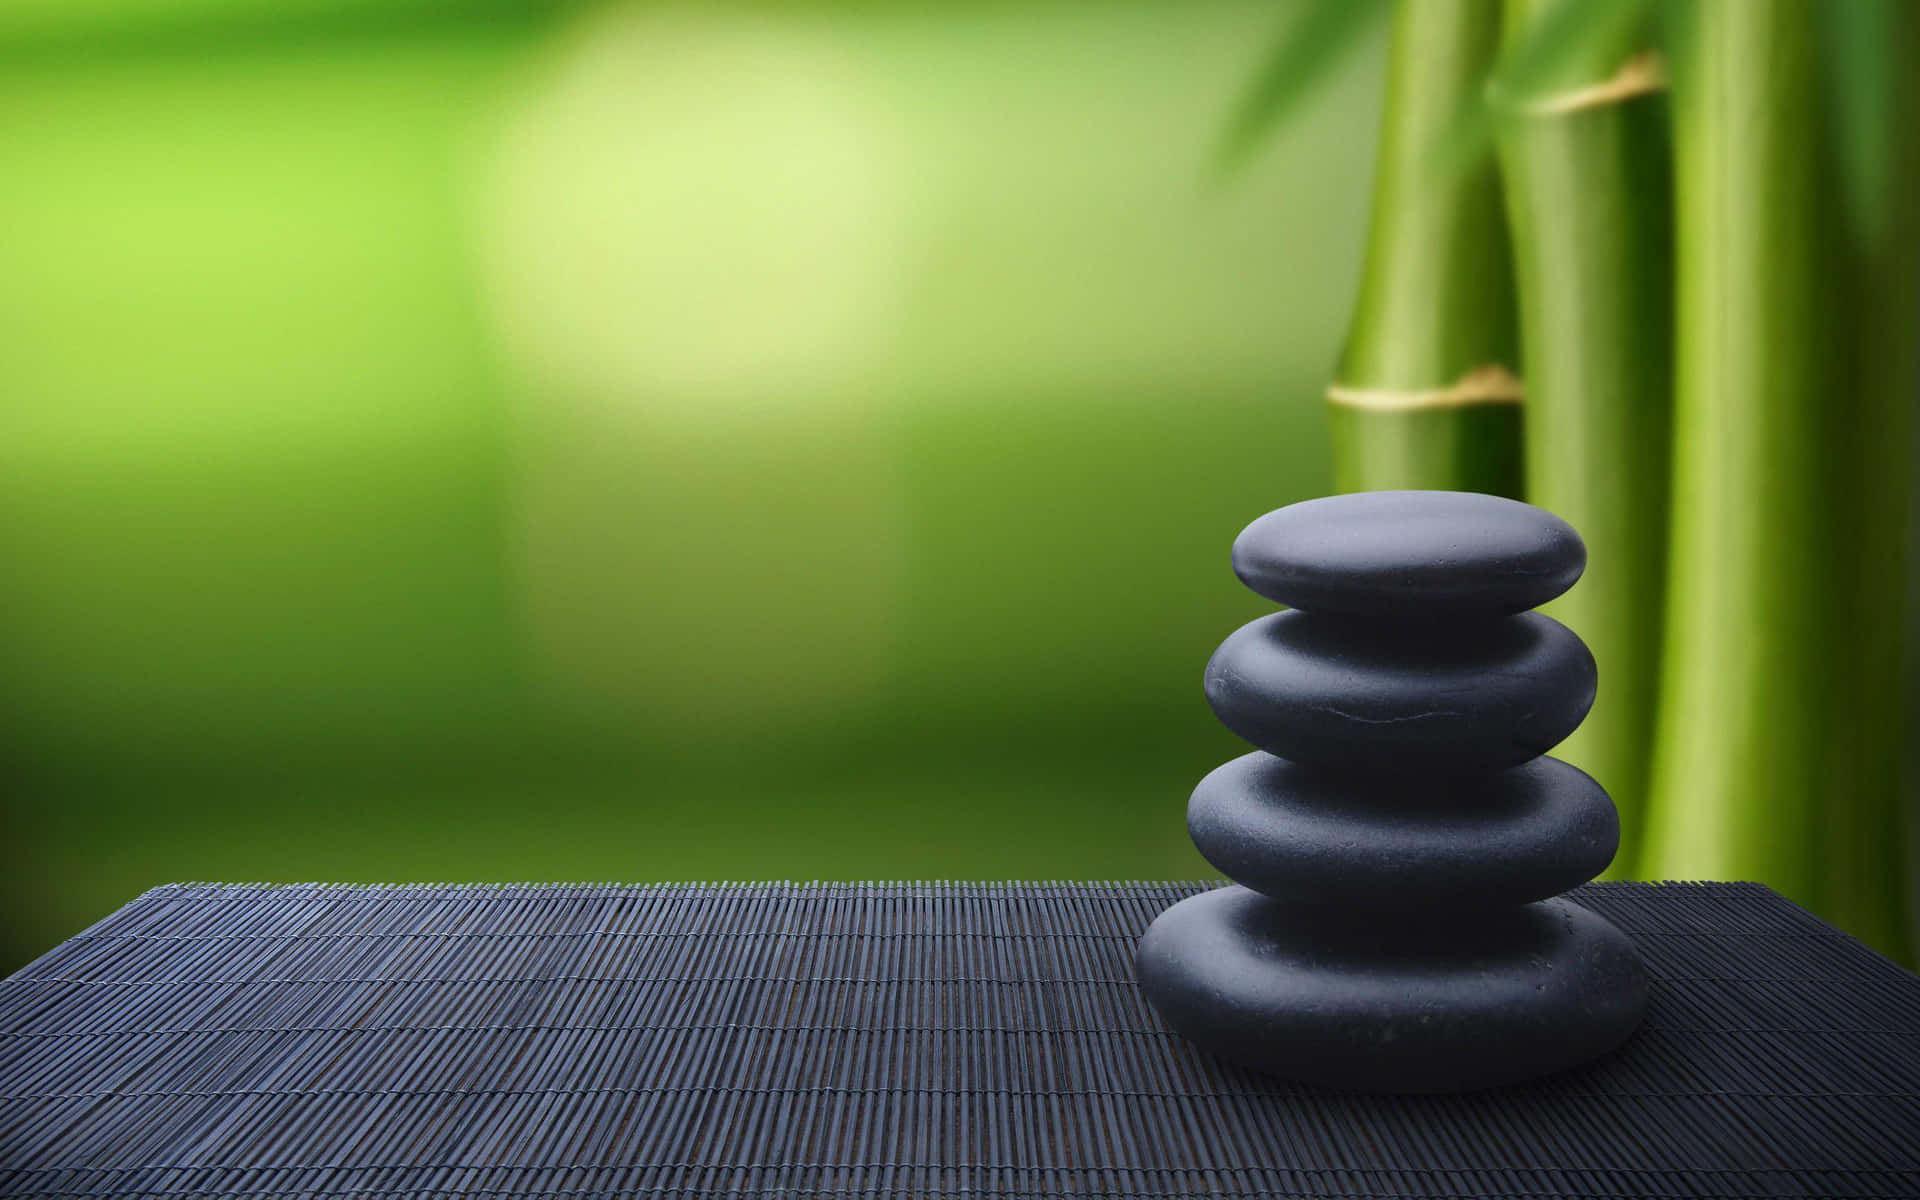 Equilibriode Piedras Con Bambú En El Escritorio. Fondo de pantalla